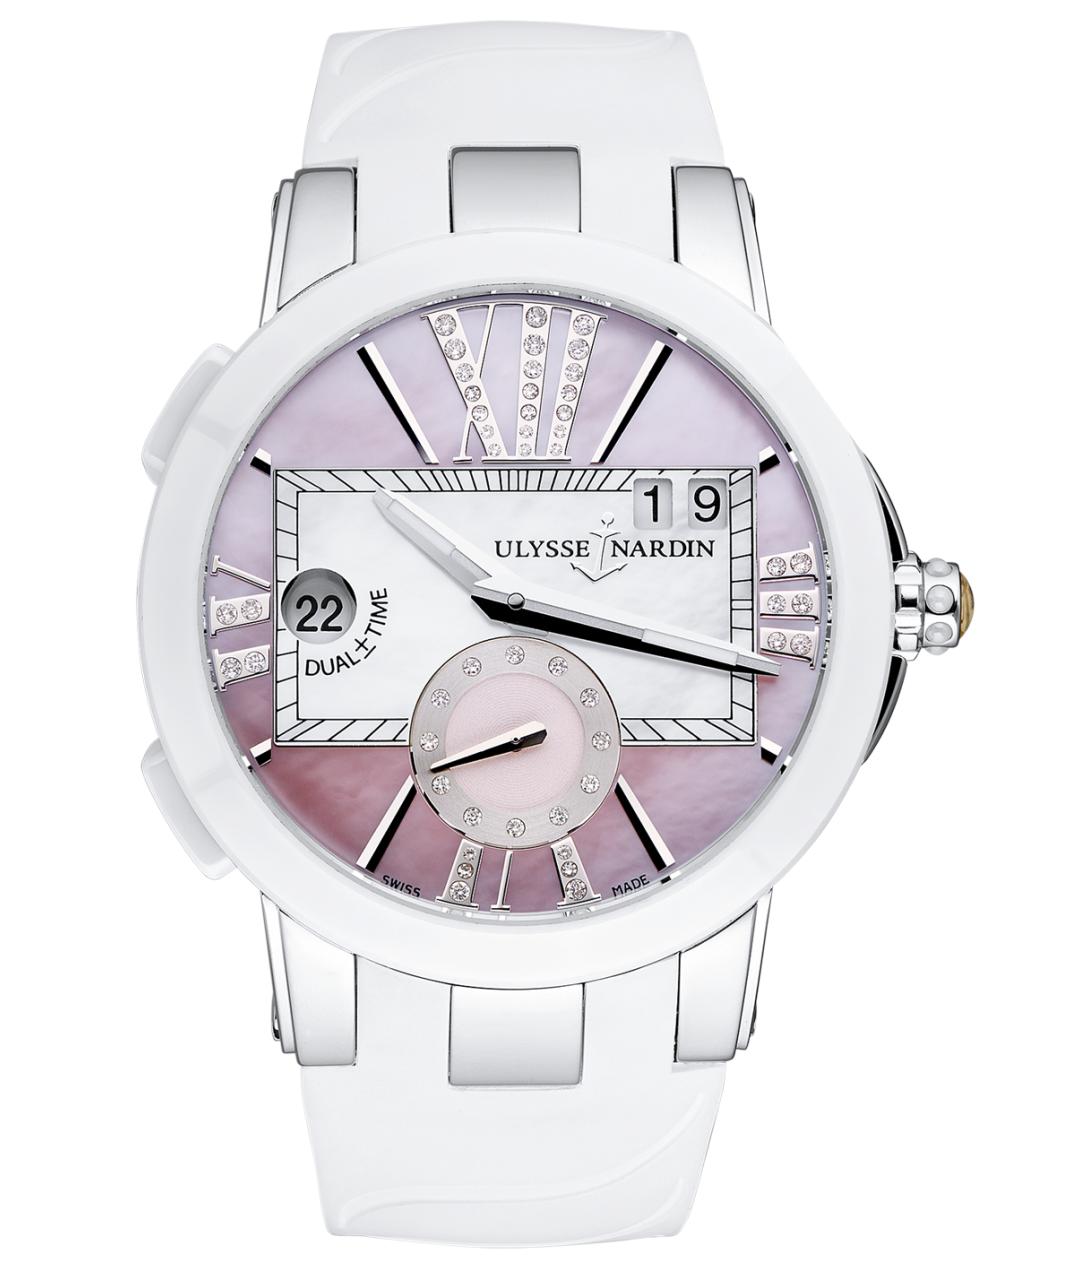 Ulysse Nardin Белые керамические часы, фото 1